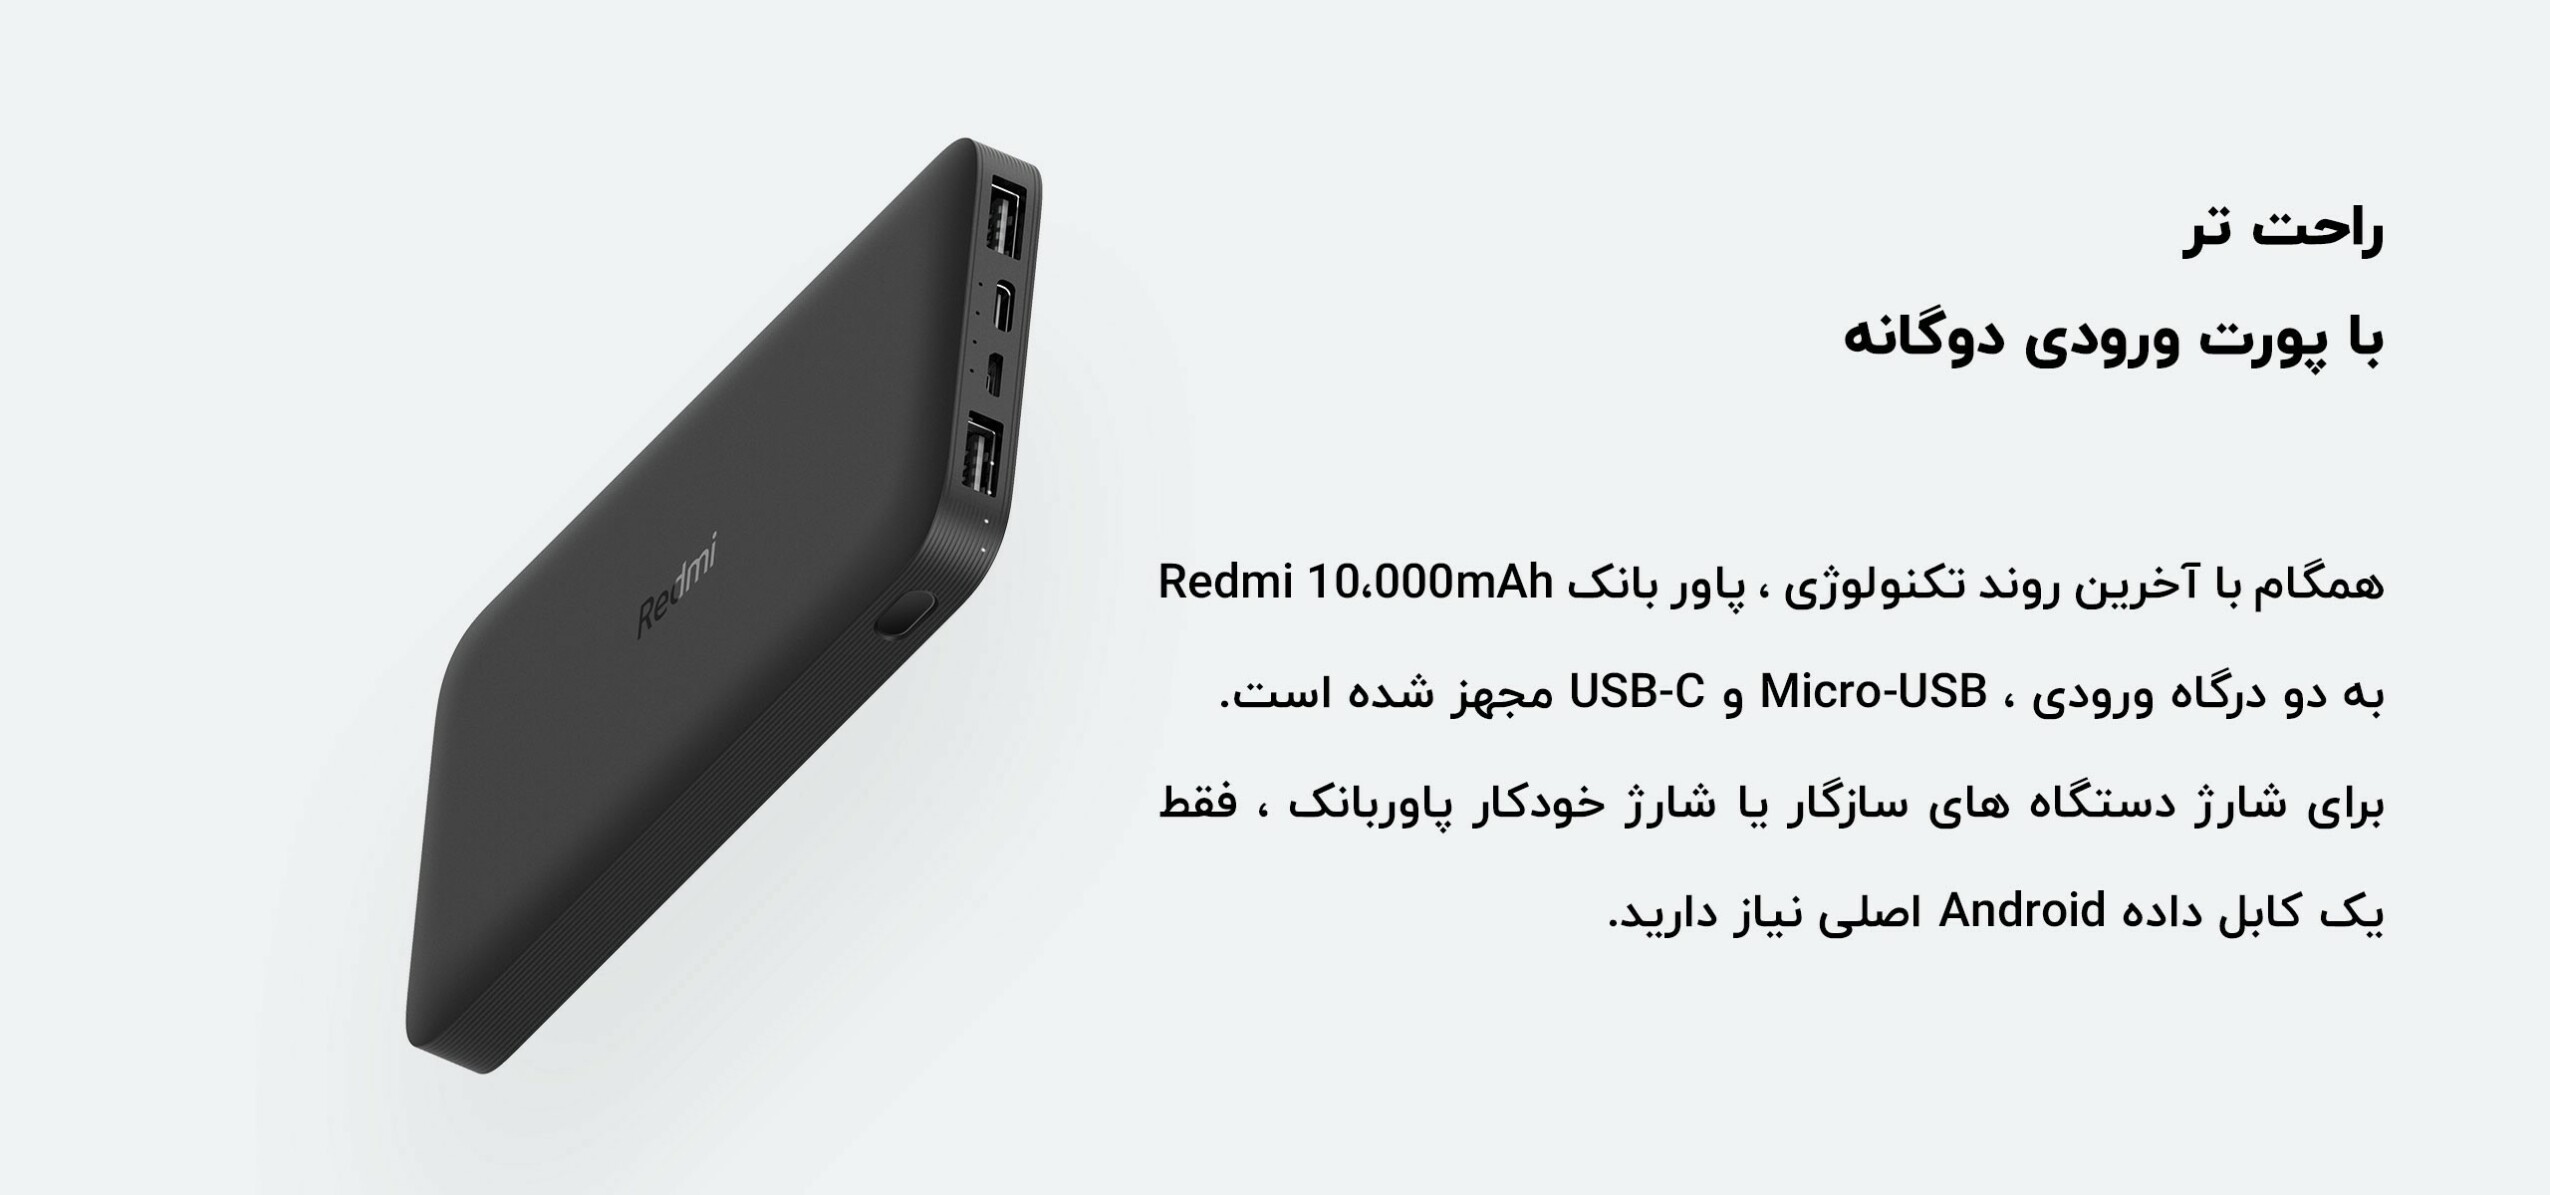 Redmi-10000